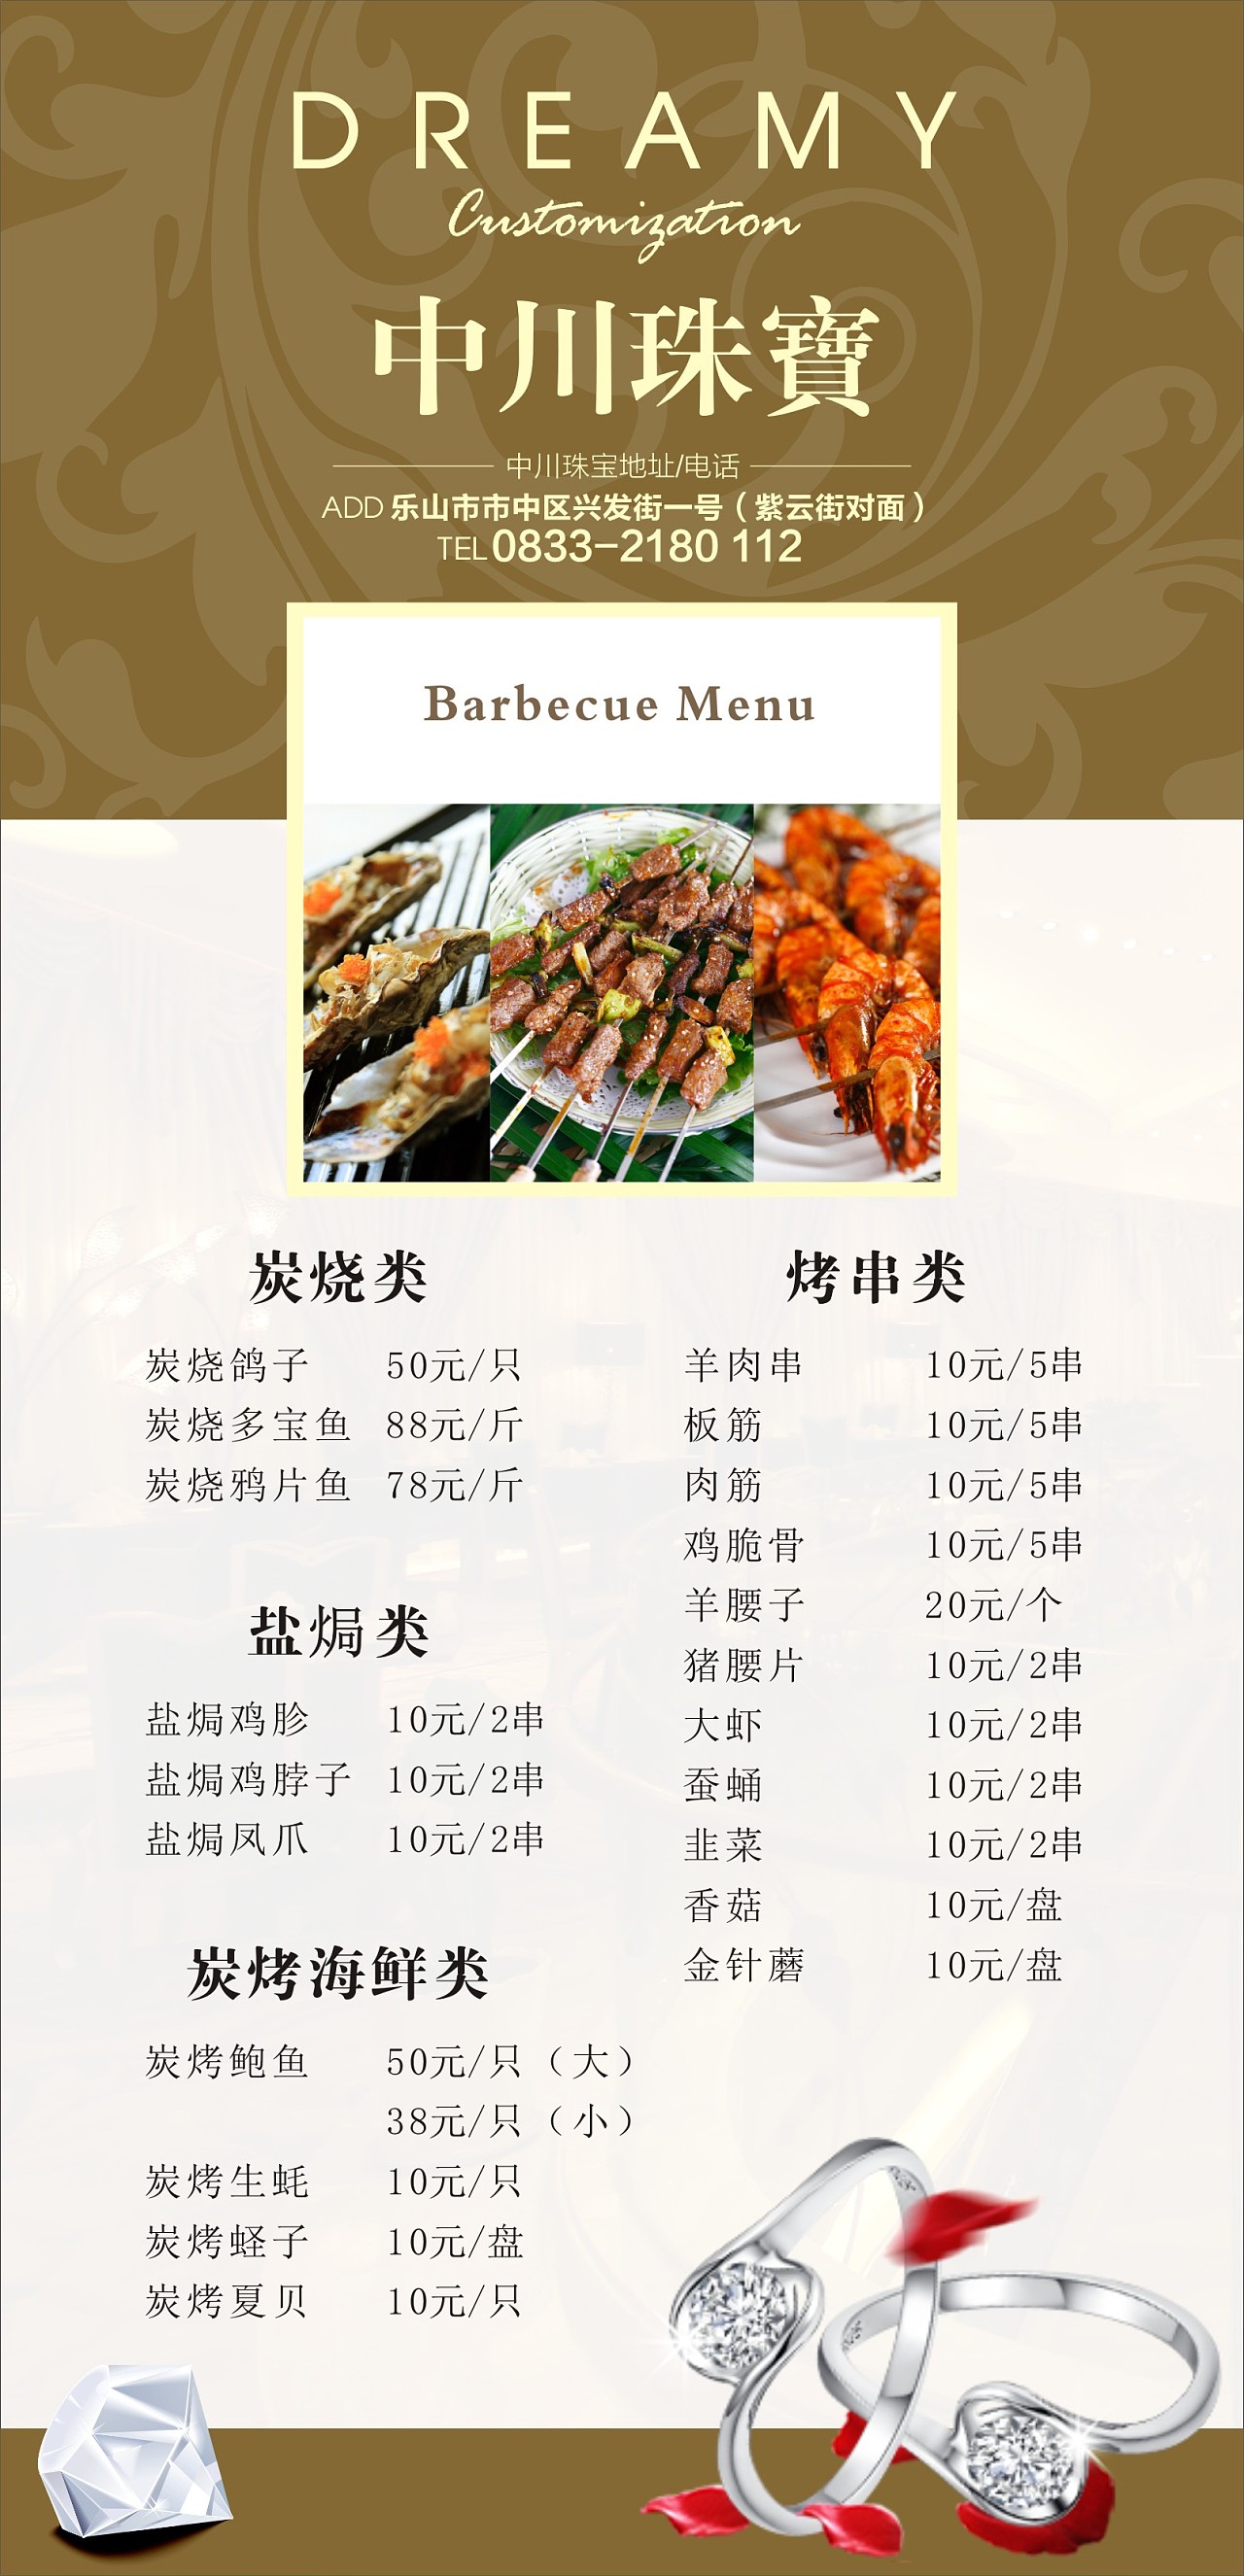 菜单饭店价格单价格表图片下载 - 觅知网